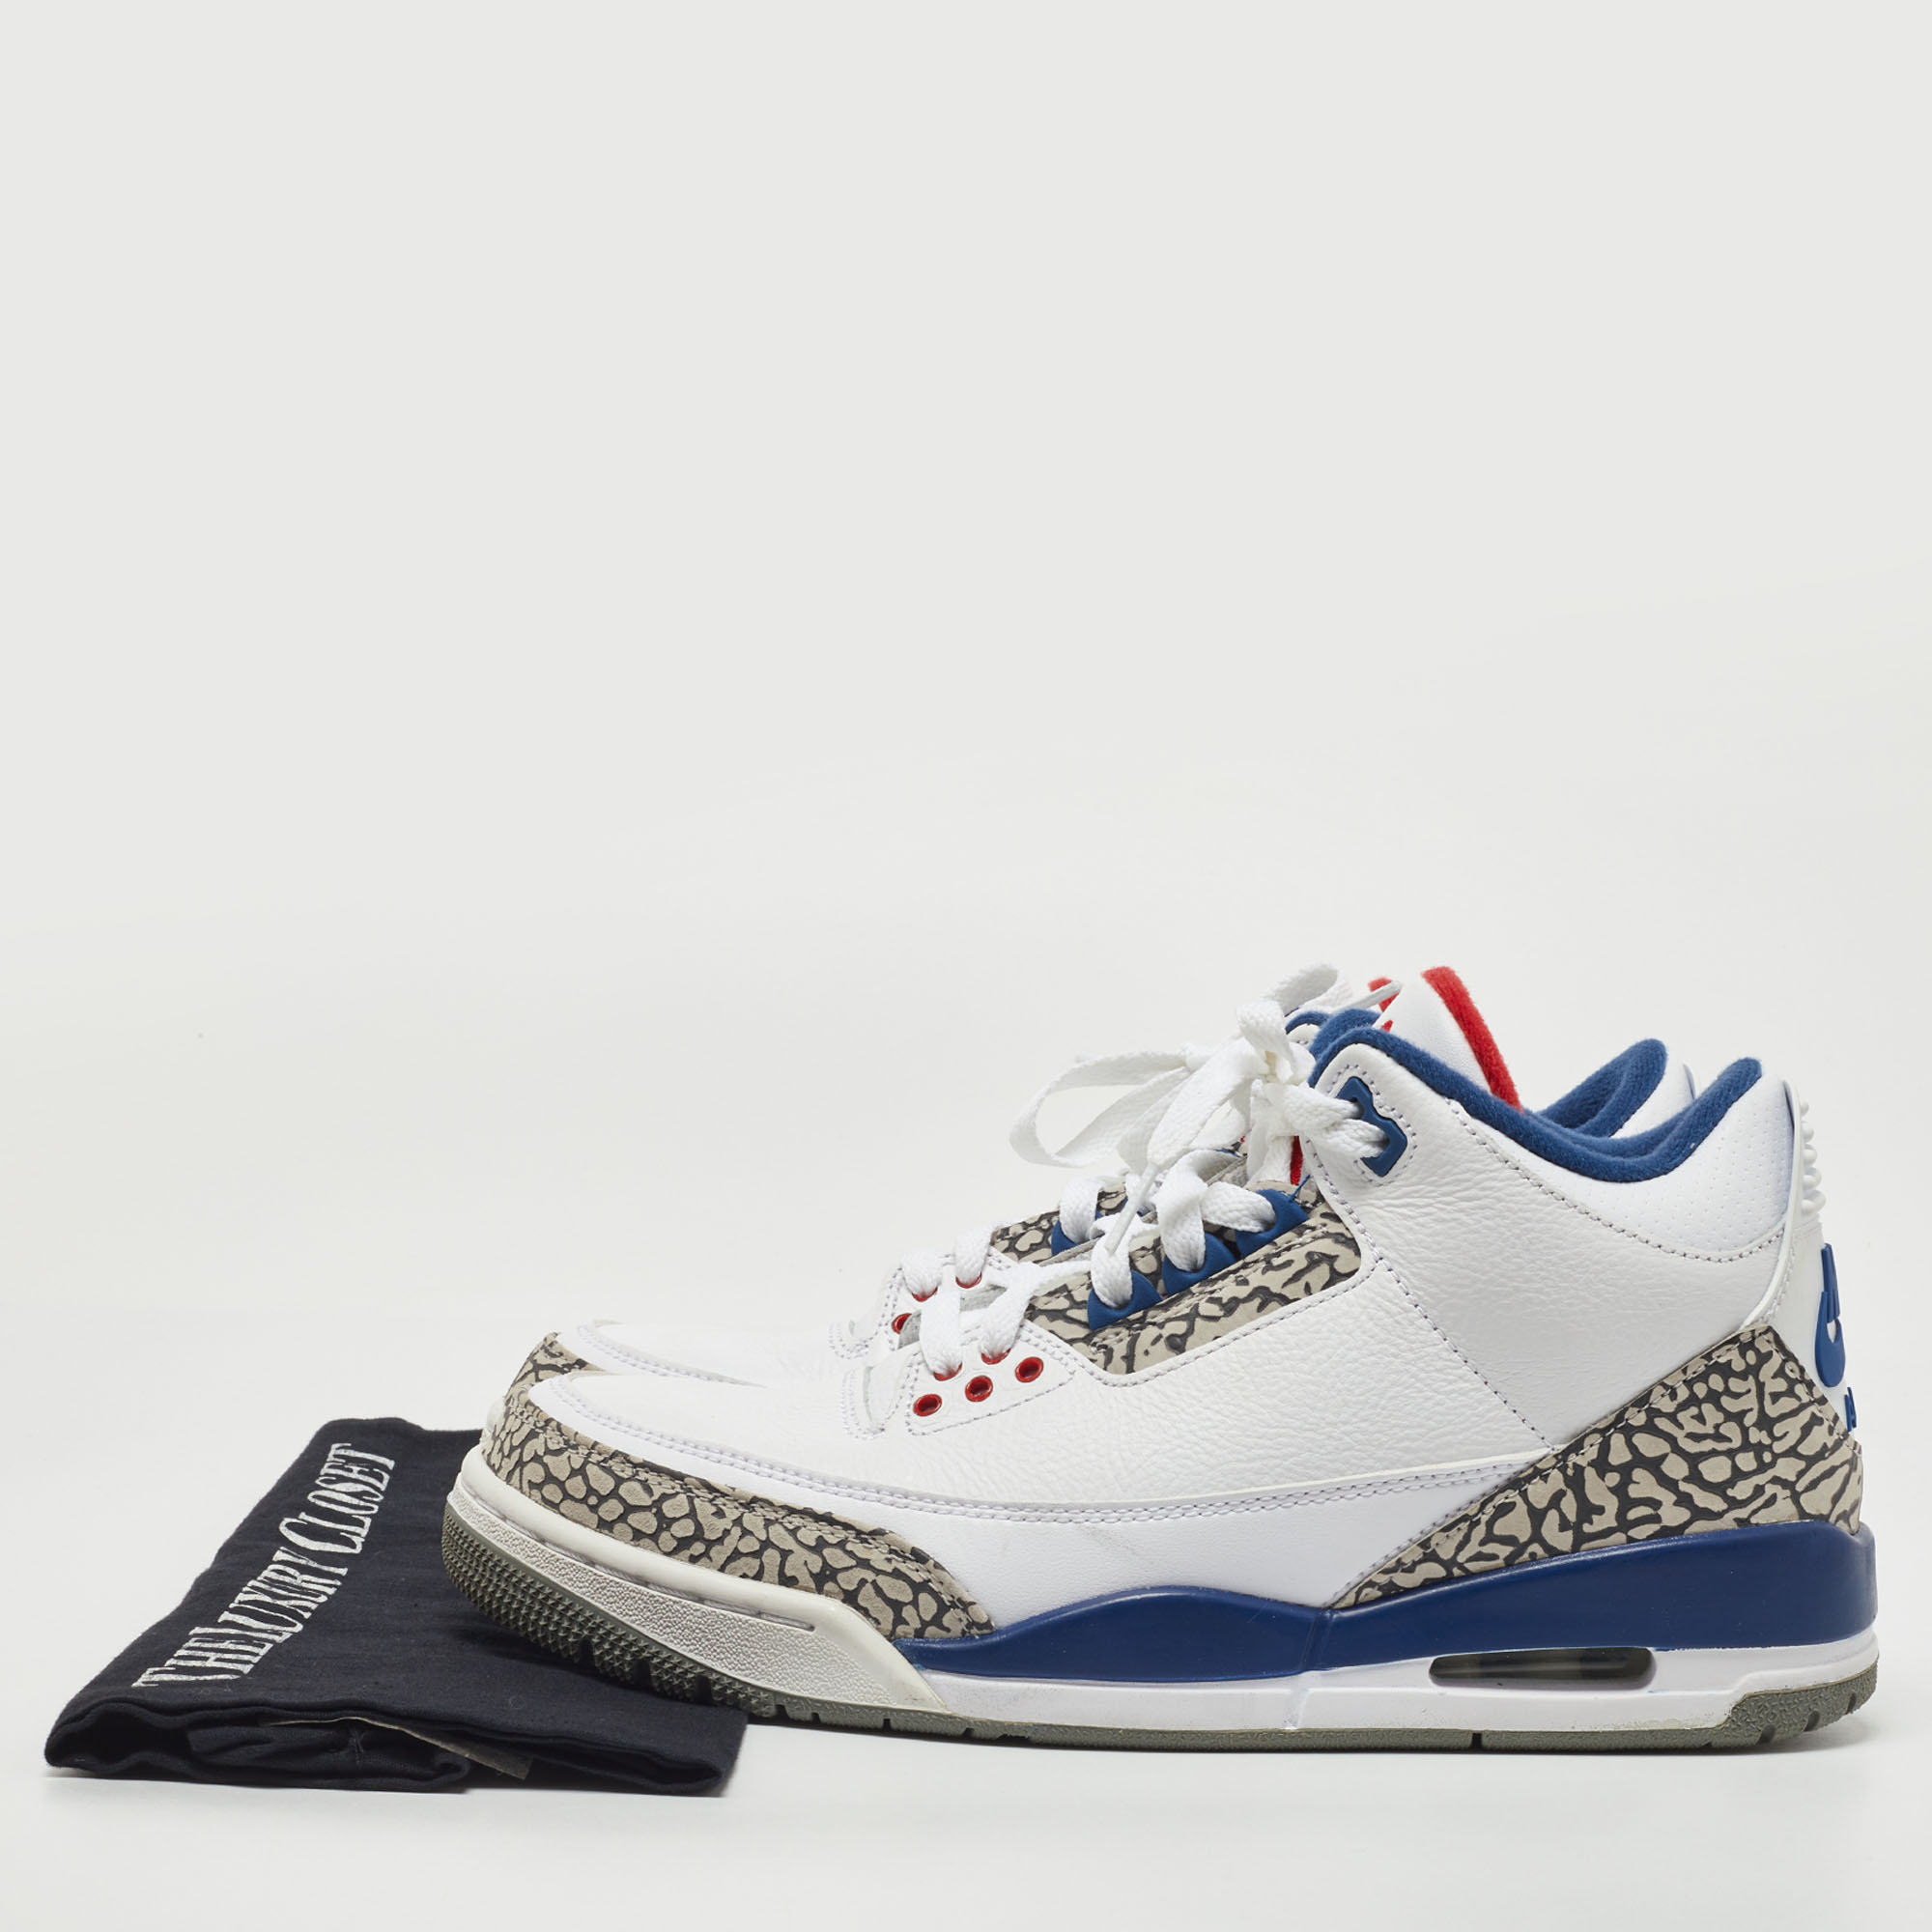 Air Jordans White/Blue Leather Jordan 3 Retro OG True Blue Sneakers Size 41